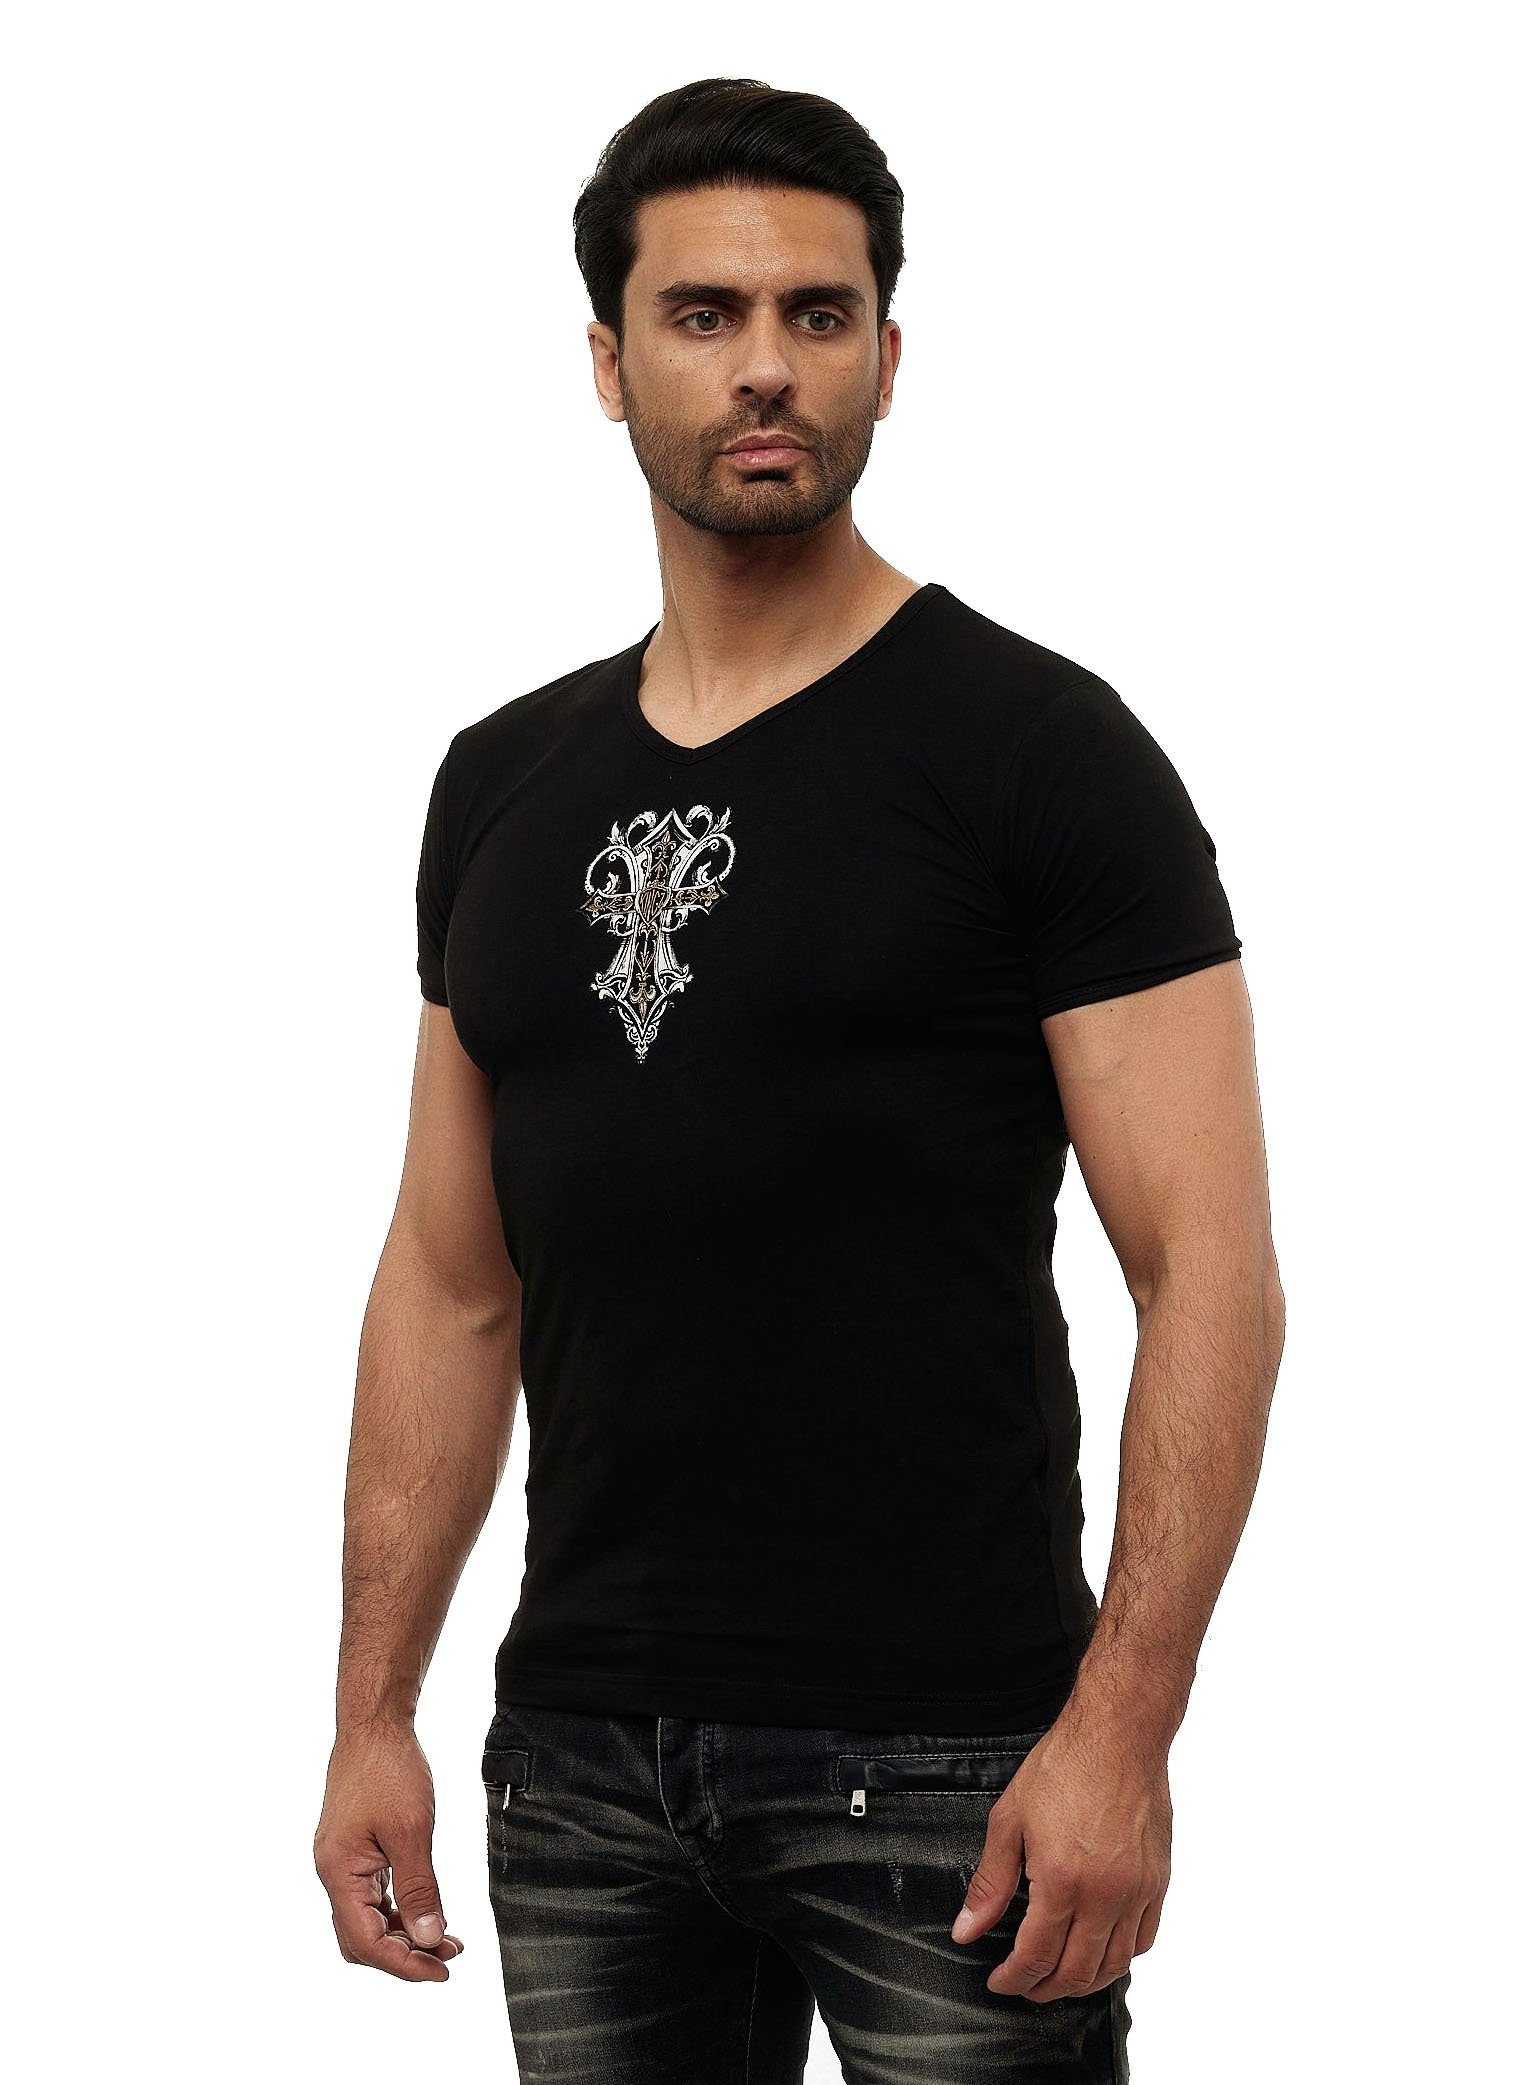 KINGZ T-Shirt in ausgefallenem Design schwarz-goldfarben